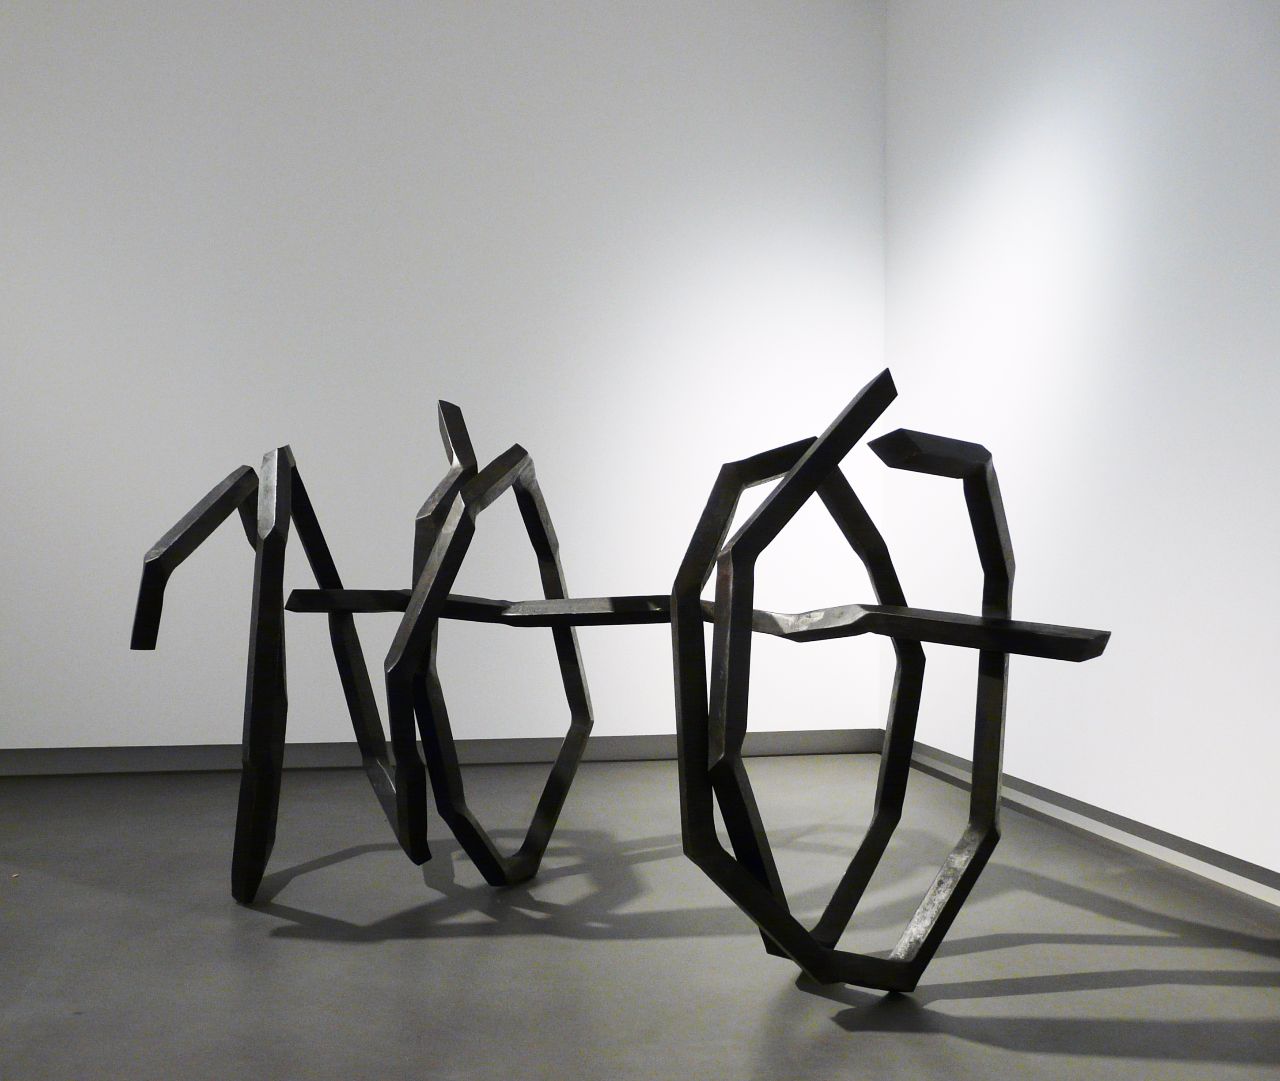 Robert-Schad, HERGIS, 2004, Vierkantstahl massiv, 45 mm, 104 cm x 178 cm x 64 cm, Preis auf Anfrage, Galerie Cyprian Brenner